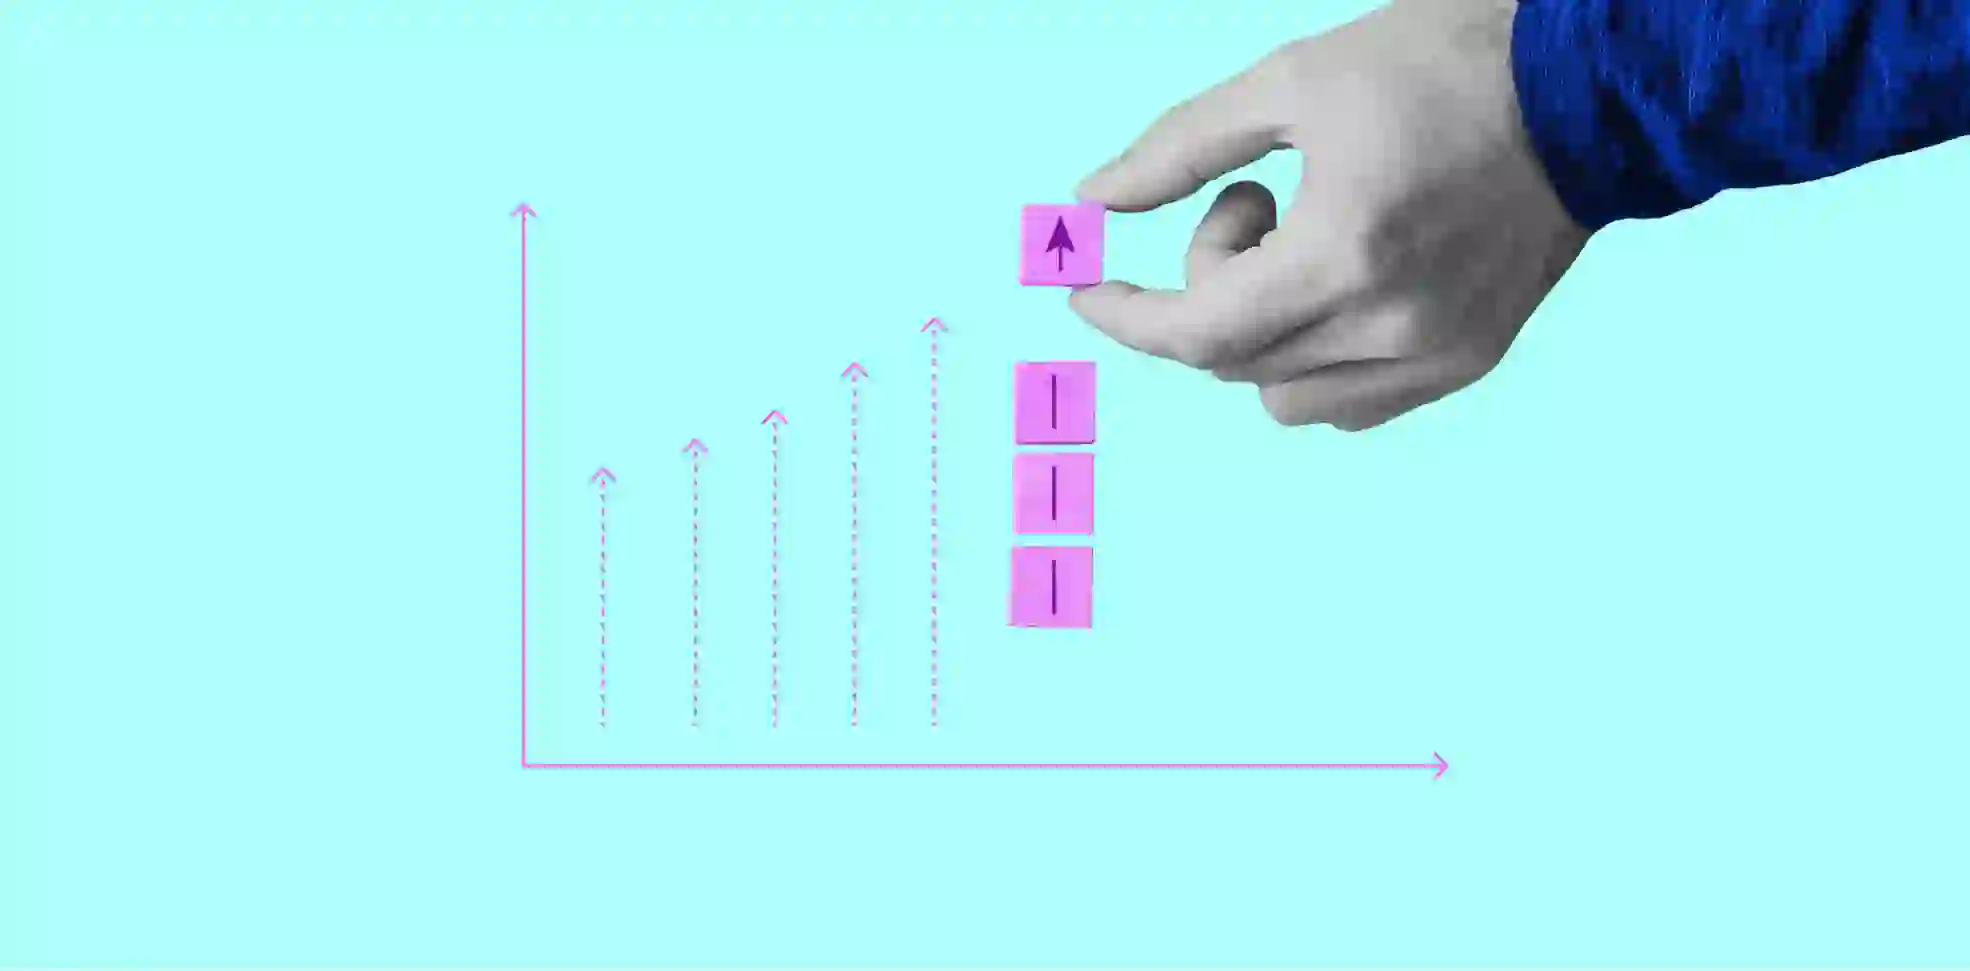 a hand moves an arrow on a chart with arrows